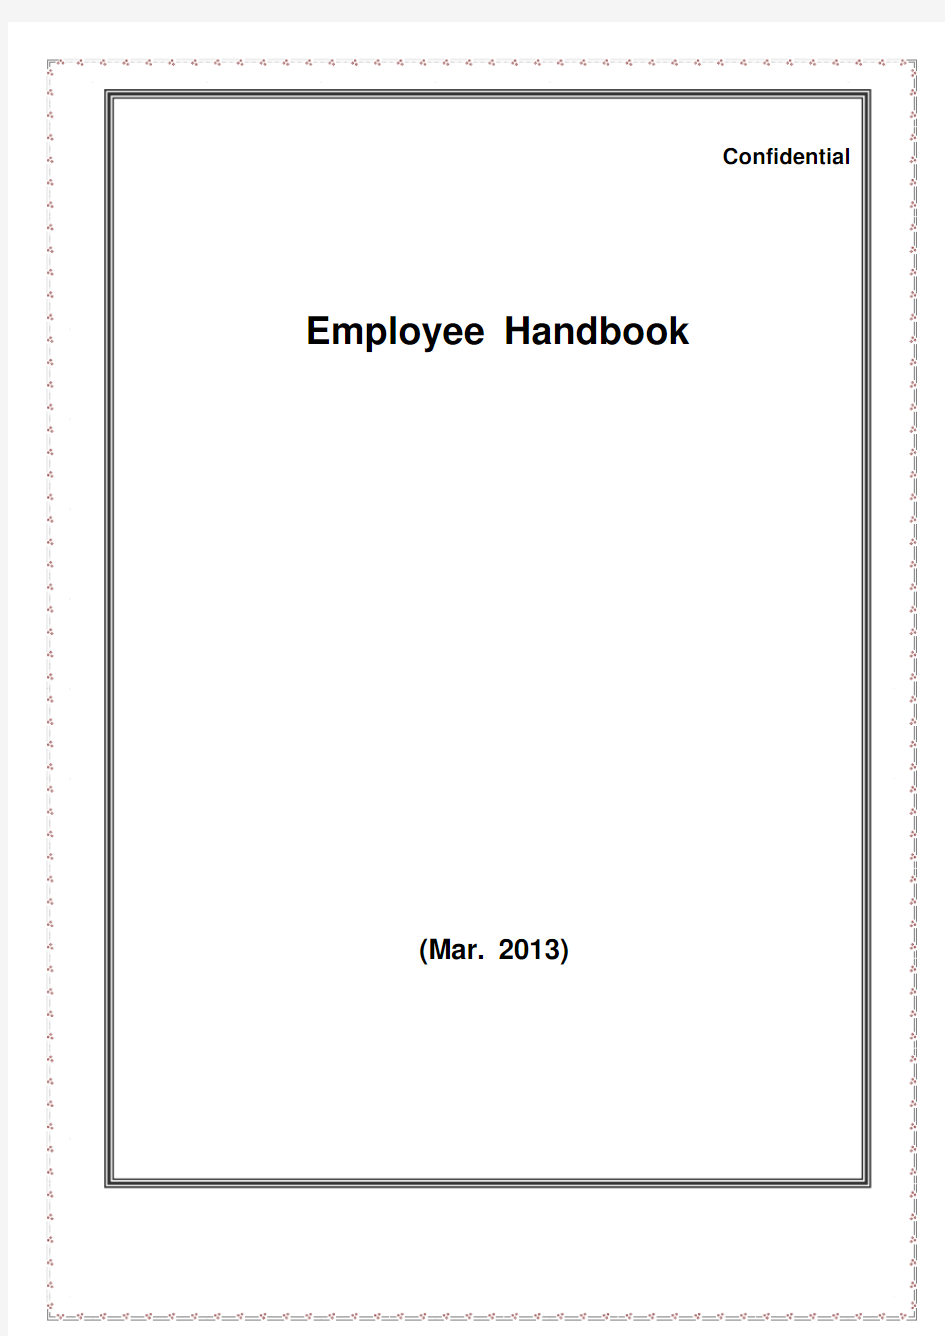 员工手册(英文版)-Employee Handbook(English)